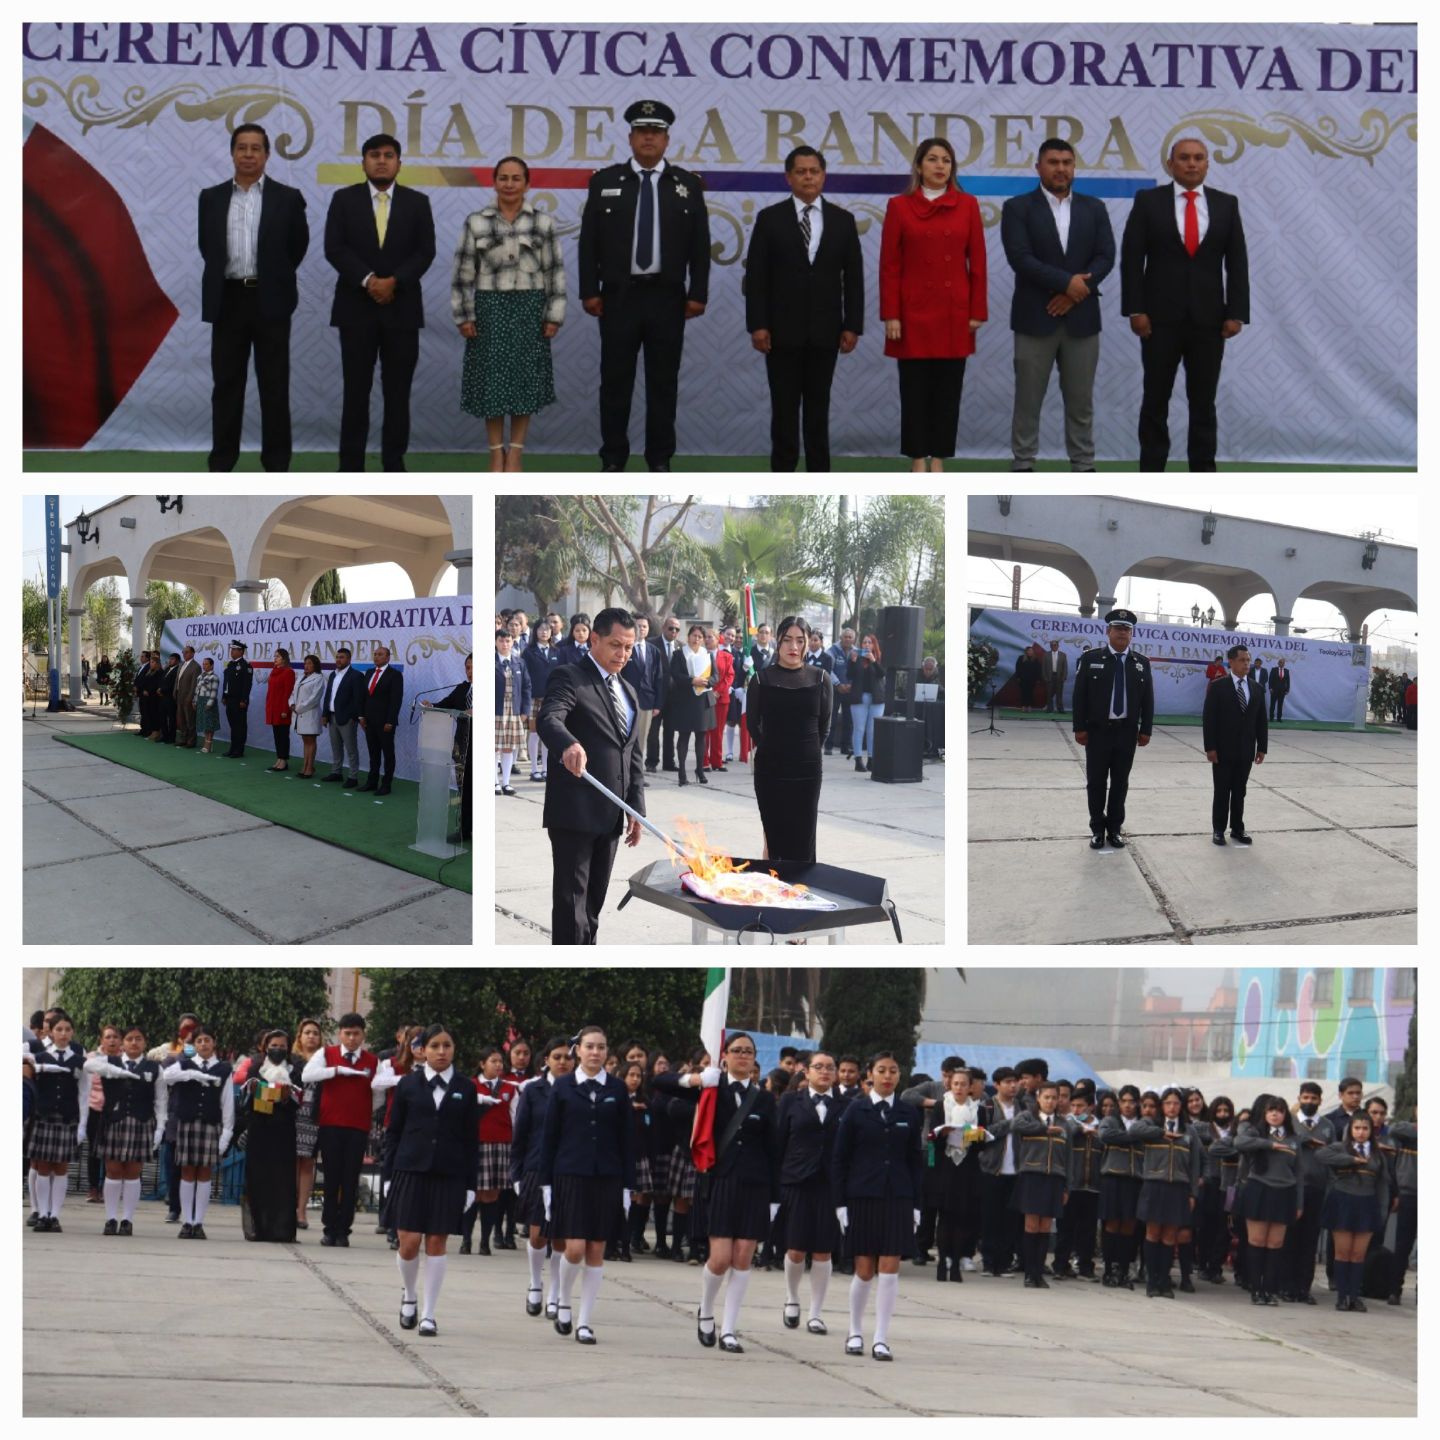 Juan Carlos Uribe Padilla
Conmemoró del ’Día de la Bandera’